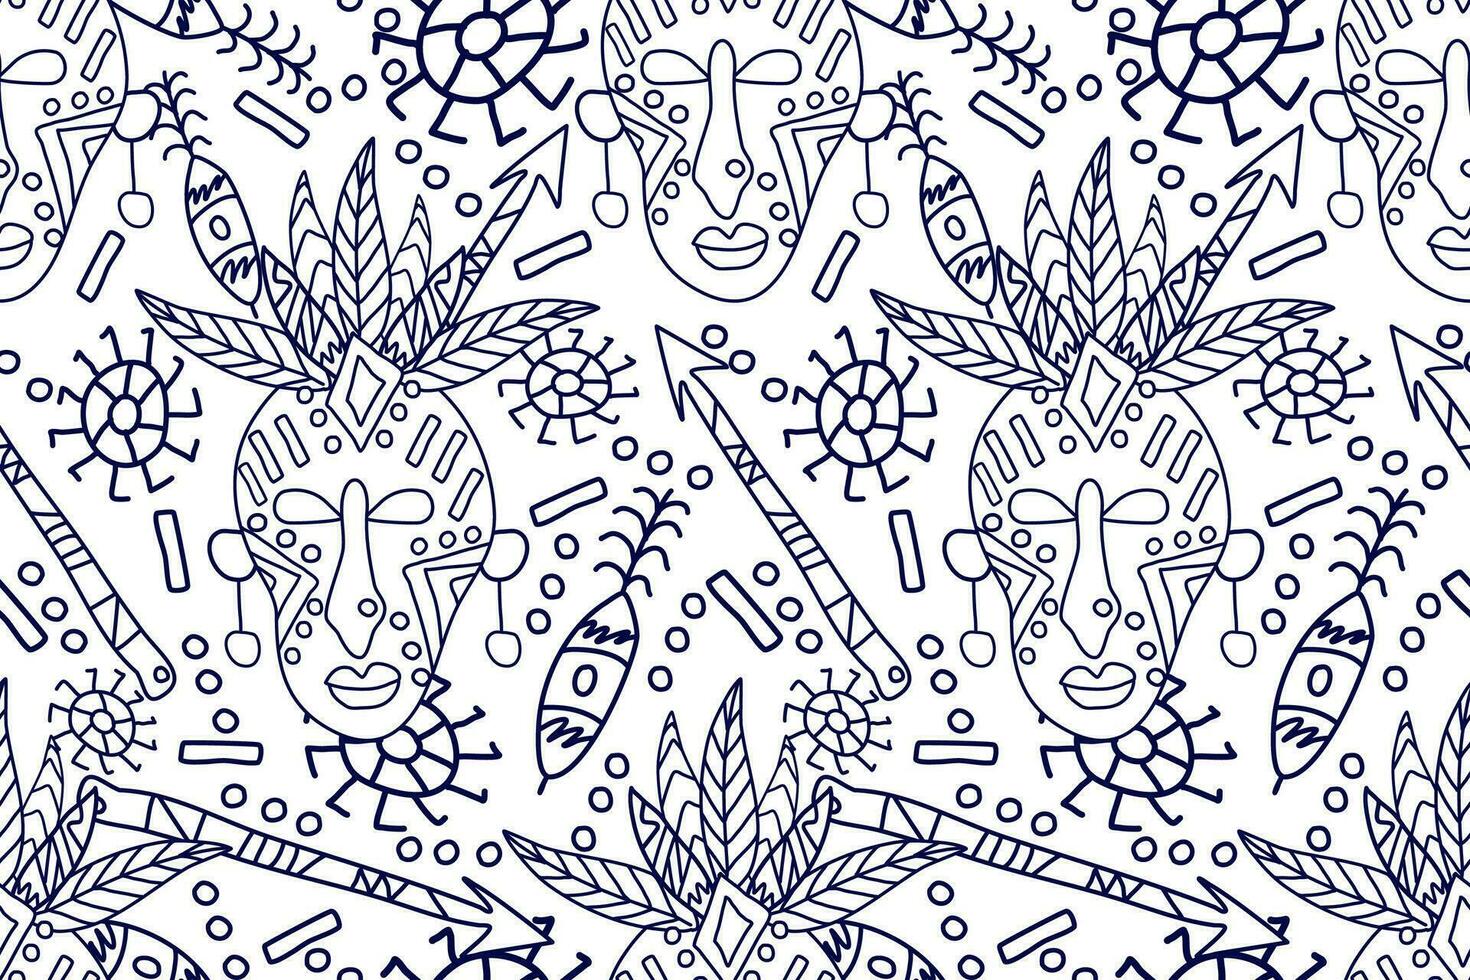 Afrikaanse naadloos patroon.blauw en wit achtergrond.aztec stijl abstract vector illustratie.ontwerp voor textuur, stof, kleding, verpakking, decoratie. Afrikaans tekening kunst patroon.